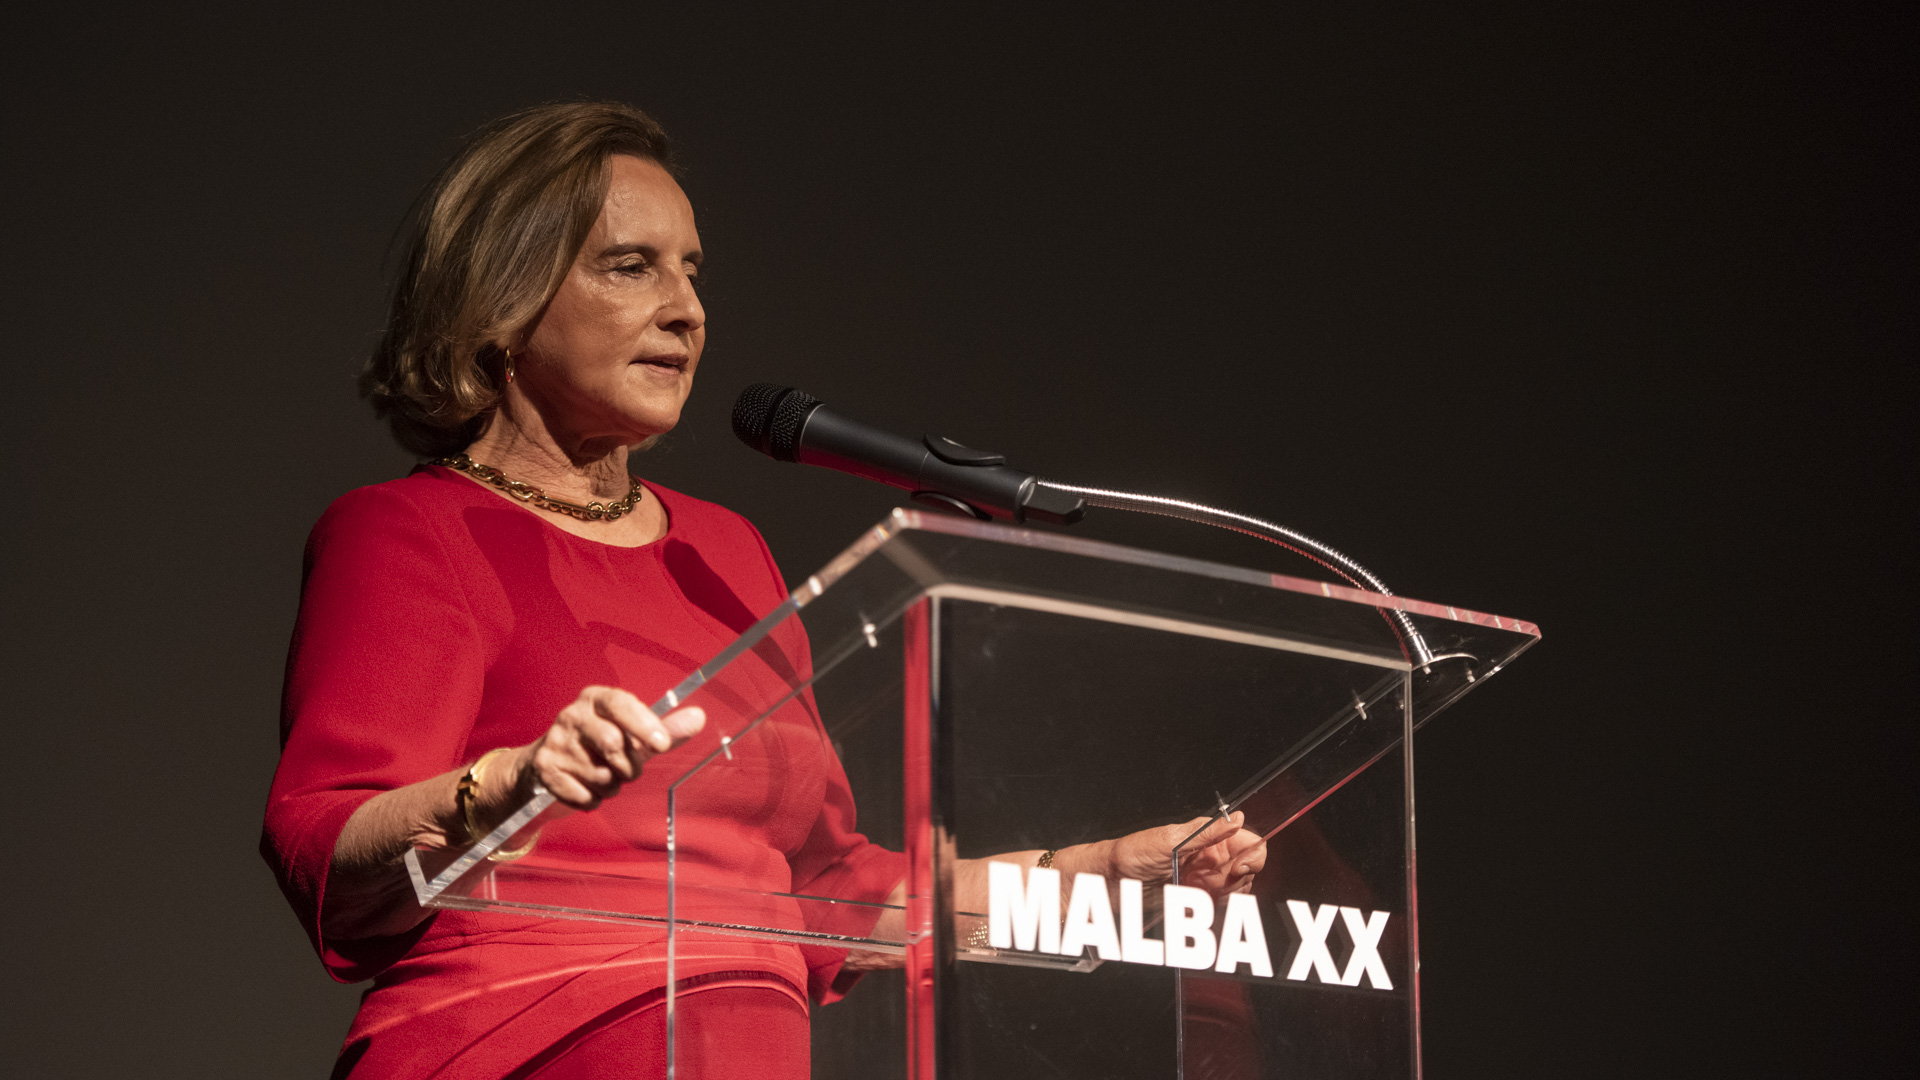 Teresa Aguirre Lanari de Bulgheroni, presidente de la Fundación Malba

